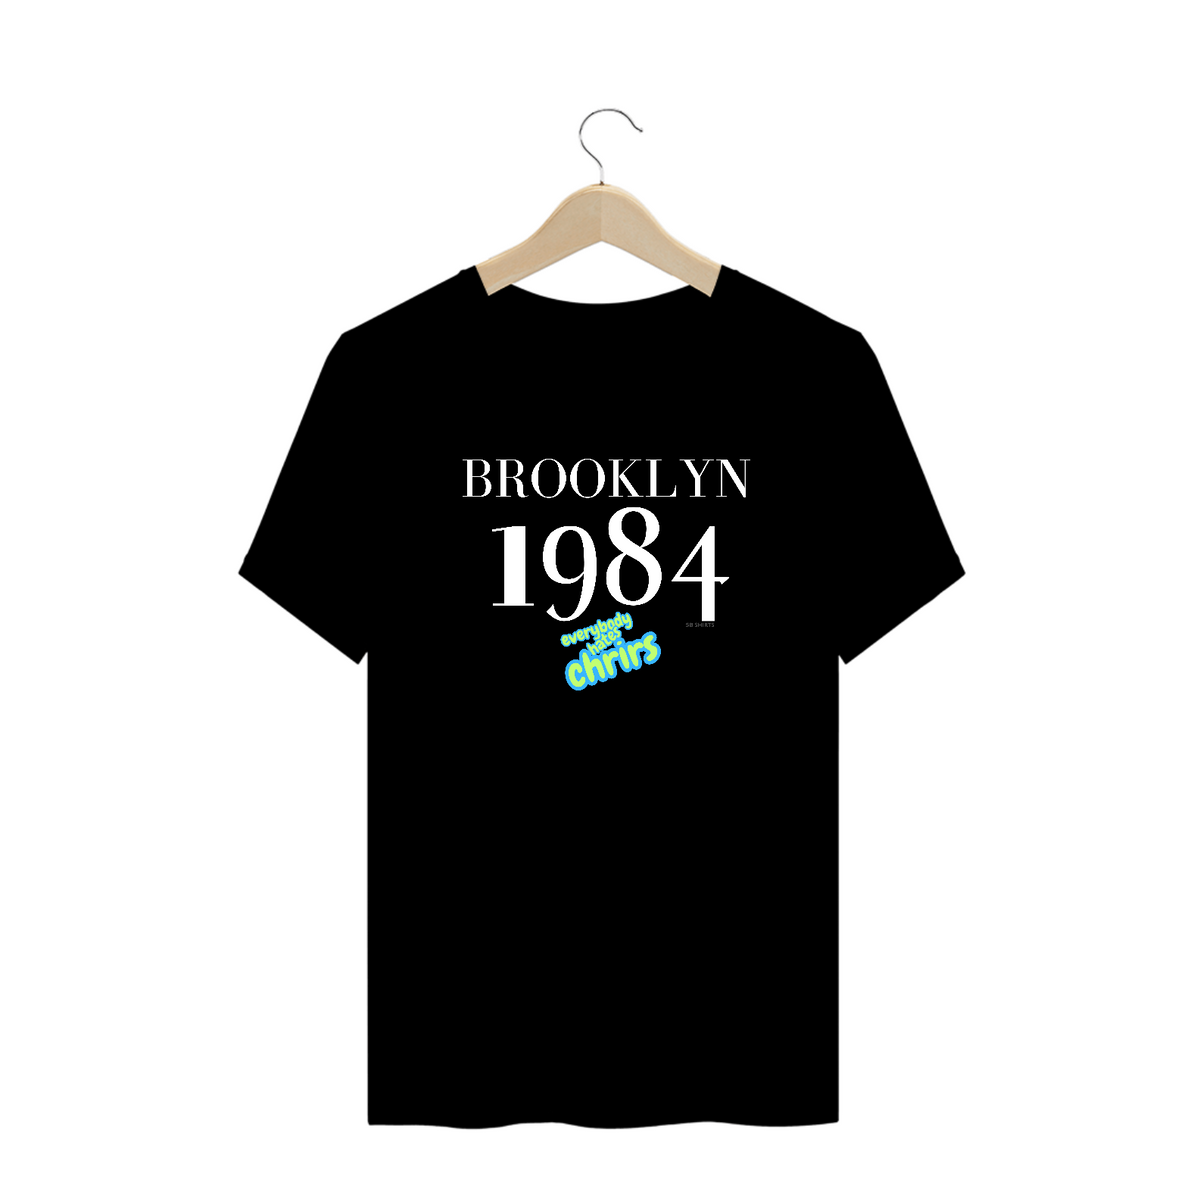 Nome do produto: Brokilyn 1984 plus size